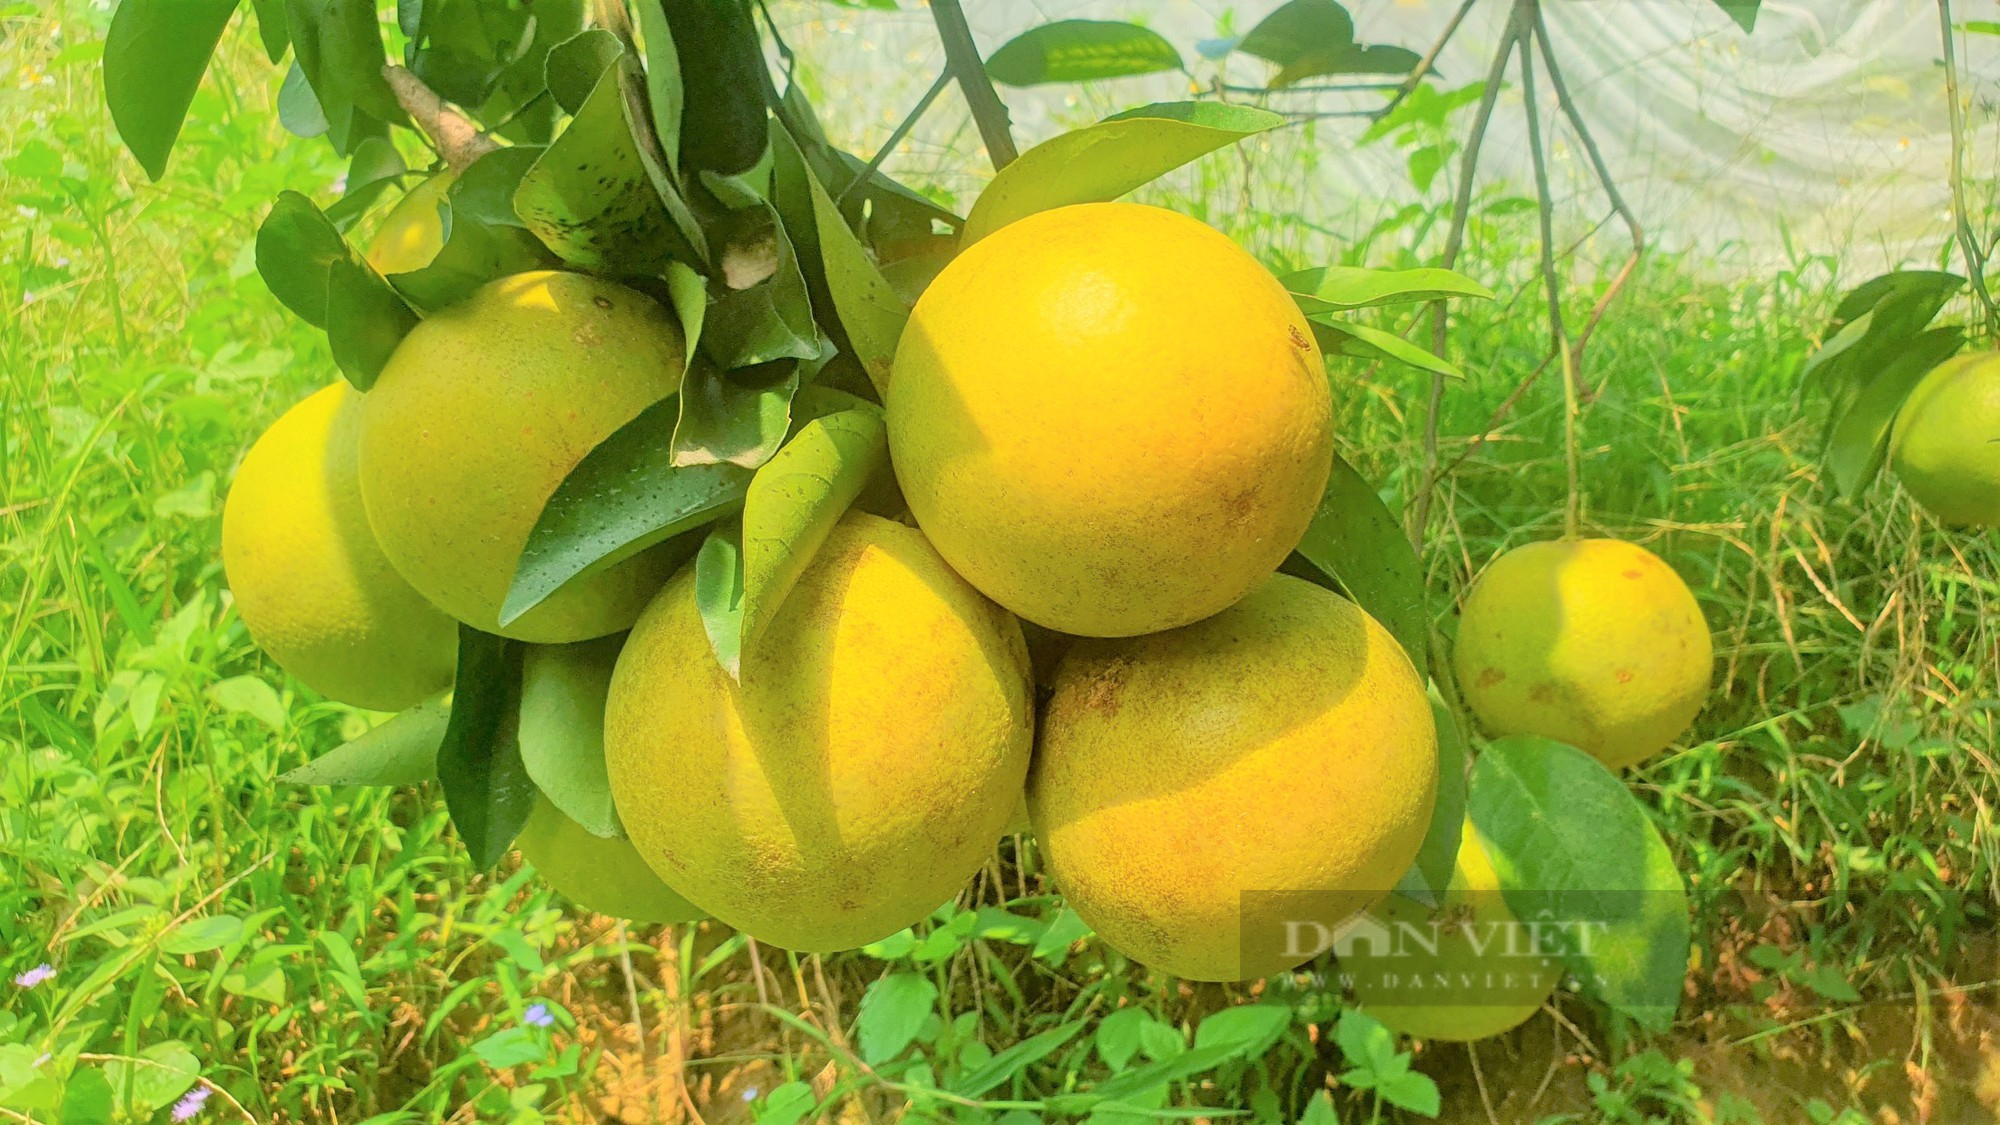 Vườn cam “mắc màn” trĩu quả của nông dân Hà Tĩnh, chưa hô bán, thương lái đặt cọc quả còn trên cây - Ảnh 4.